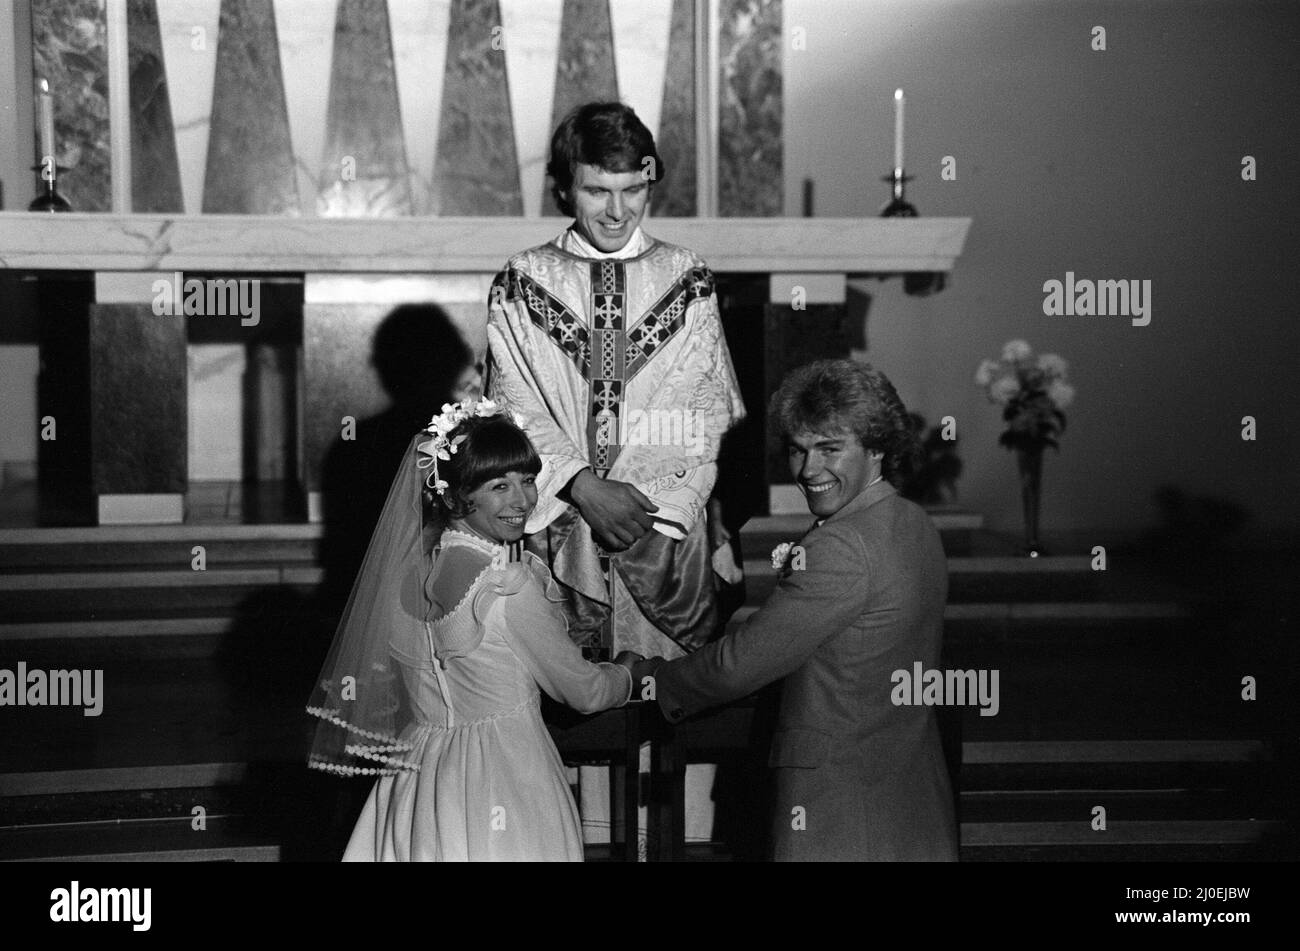 Le mariage de Brian Tilsley et Gail Potter, de Coronation Street. Le couple, joué par Helen Worth et Christopher Quinten, est photographié avec le prêtre, joué par Paul Seed. 13th novembre 1979. Banque D'Images